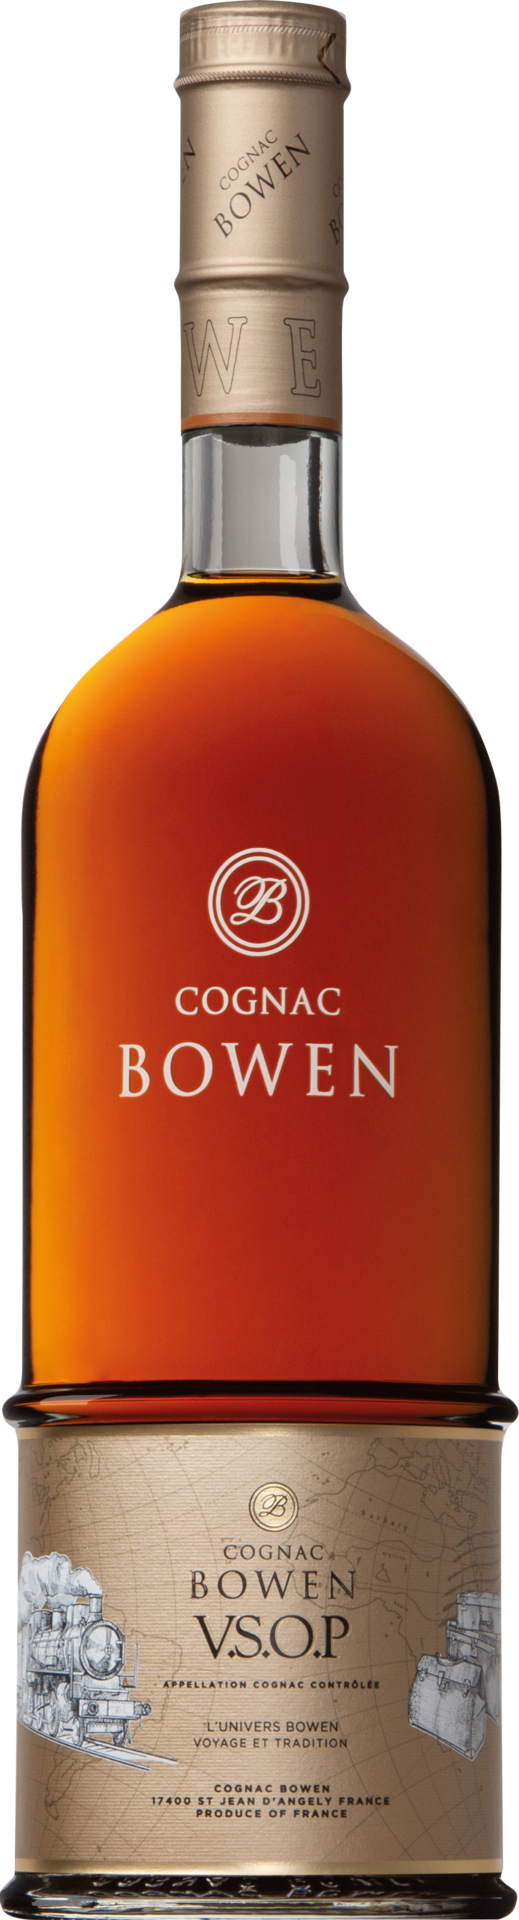 Cognac Bowen VSOP 4-5 Jahre in GP